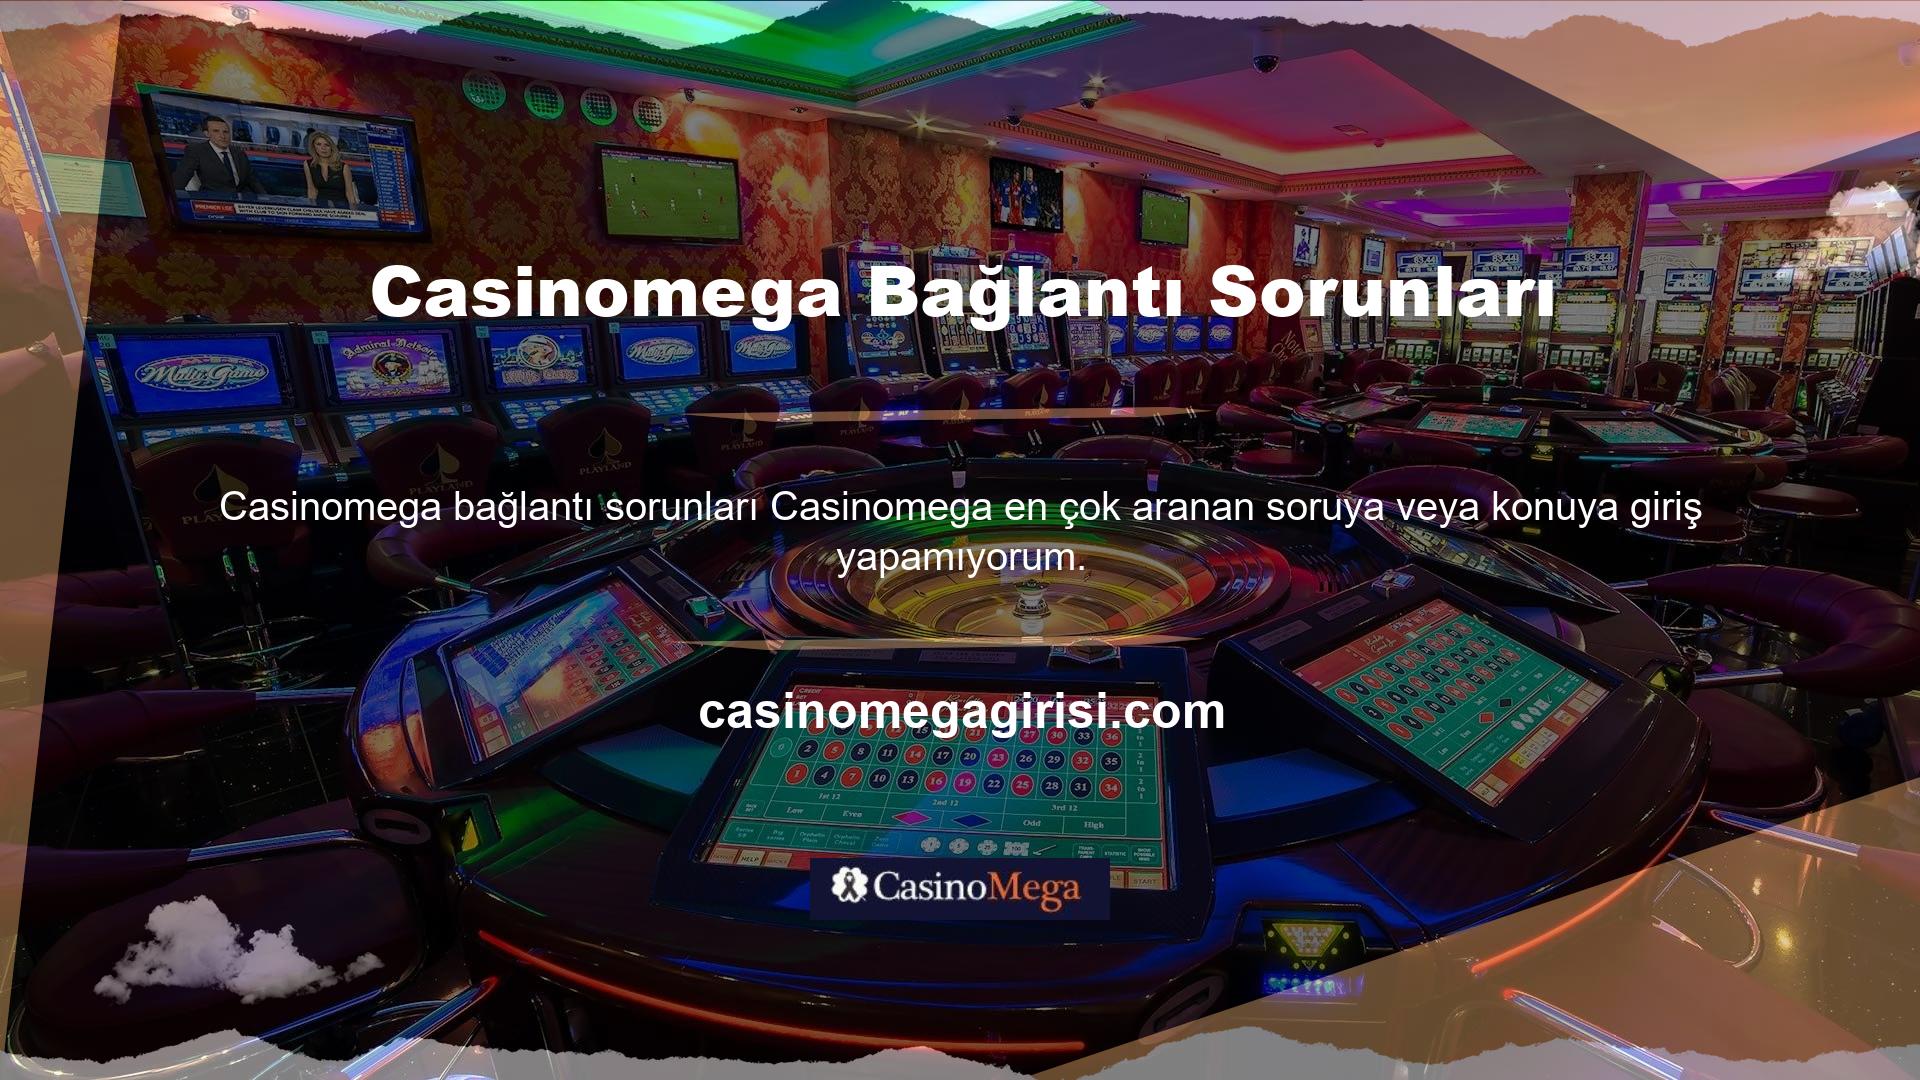 Aboneliğiniz iptal mi edildi? Birçok kullanıcı (çoğunlukla yeni kullanıcılar), Türkiye pazarındaki mevcut üyelikler ve Casinomega ile ilgili giriş sorunlarından endişe duymaktadır